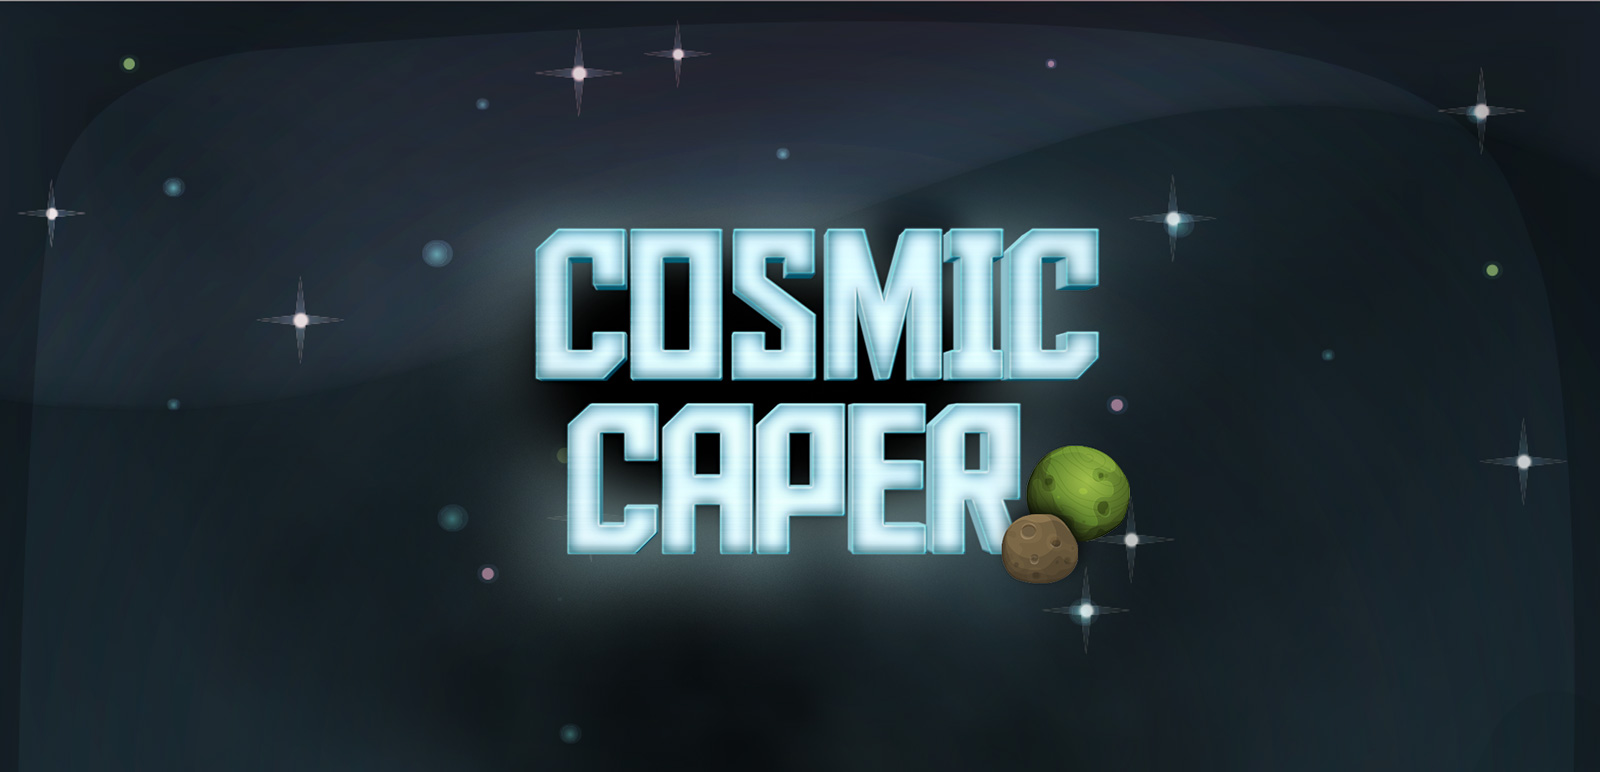 Cosmic Caper - A Space Game! 3